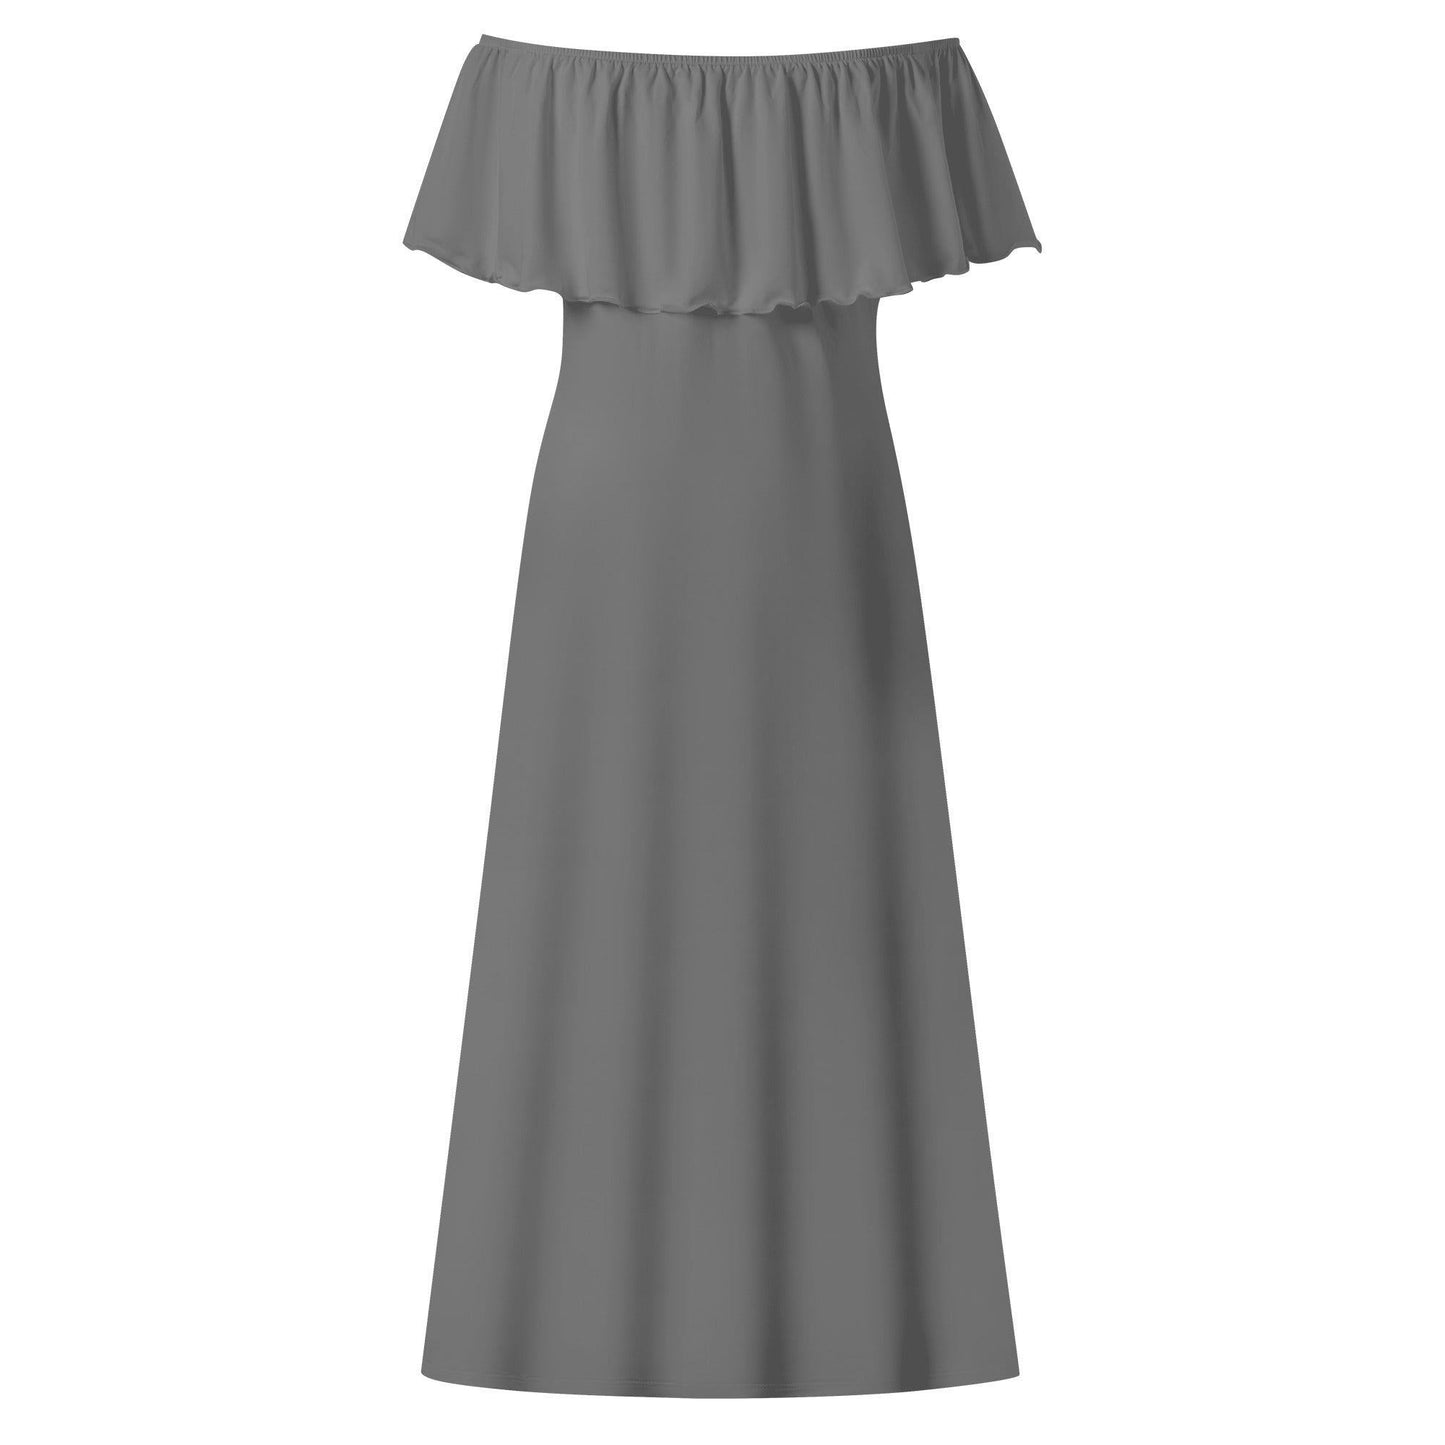 Langes schulterfreies graues Kleid mit lockerem Oberteil Off-Shoulder-Kleid 73.99 grau, Kleid, Lang, locker, Oberteil, Schulterfrei JLR Design